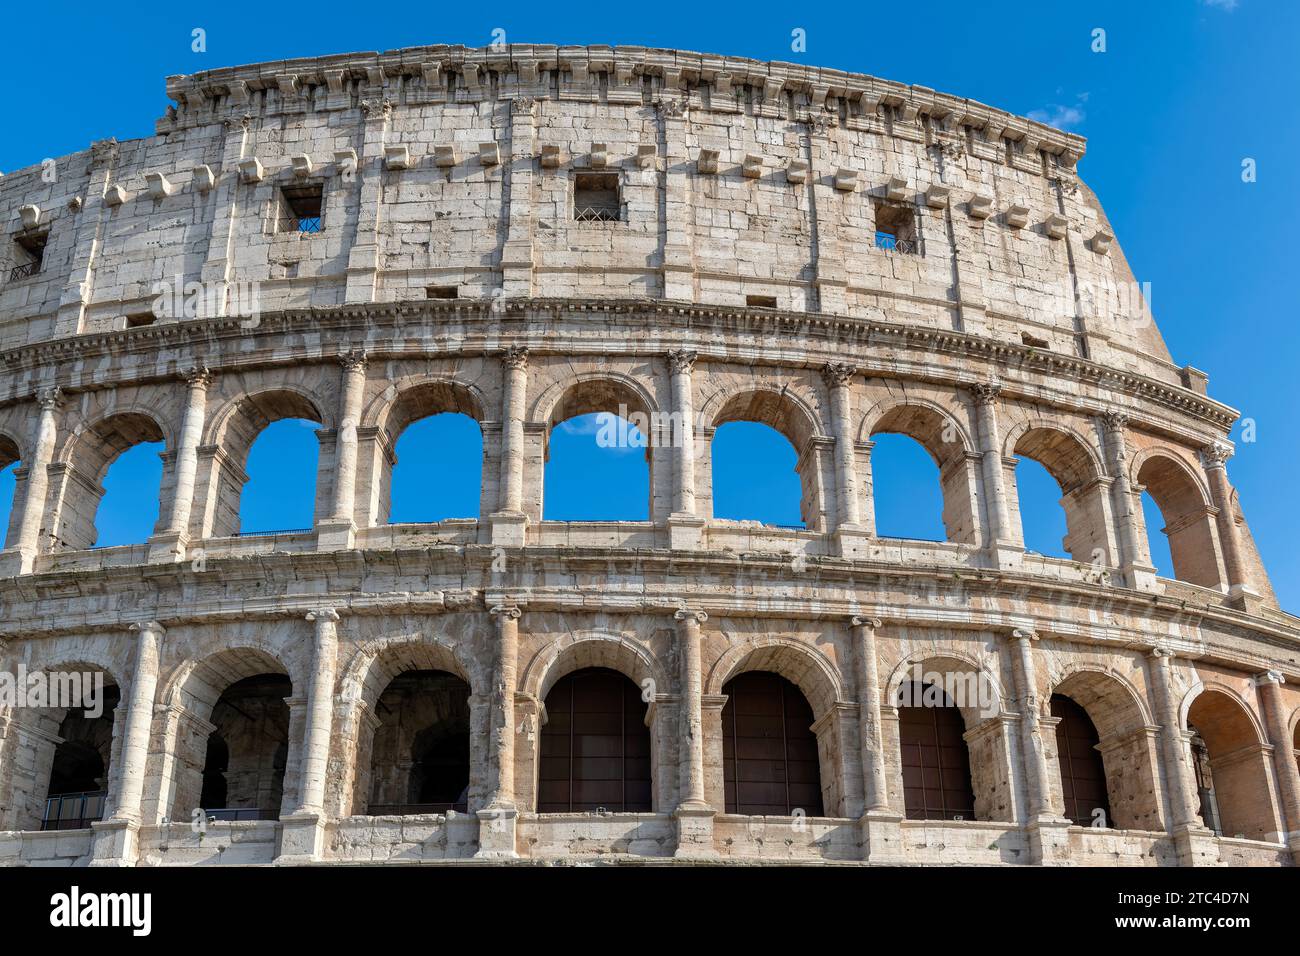 Bâtiments du Colisée avec des arches situées contre le ciel bleu dans la rue de Rome, Italie. Banque D'Images